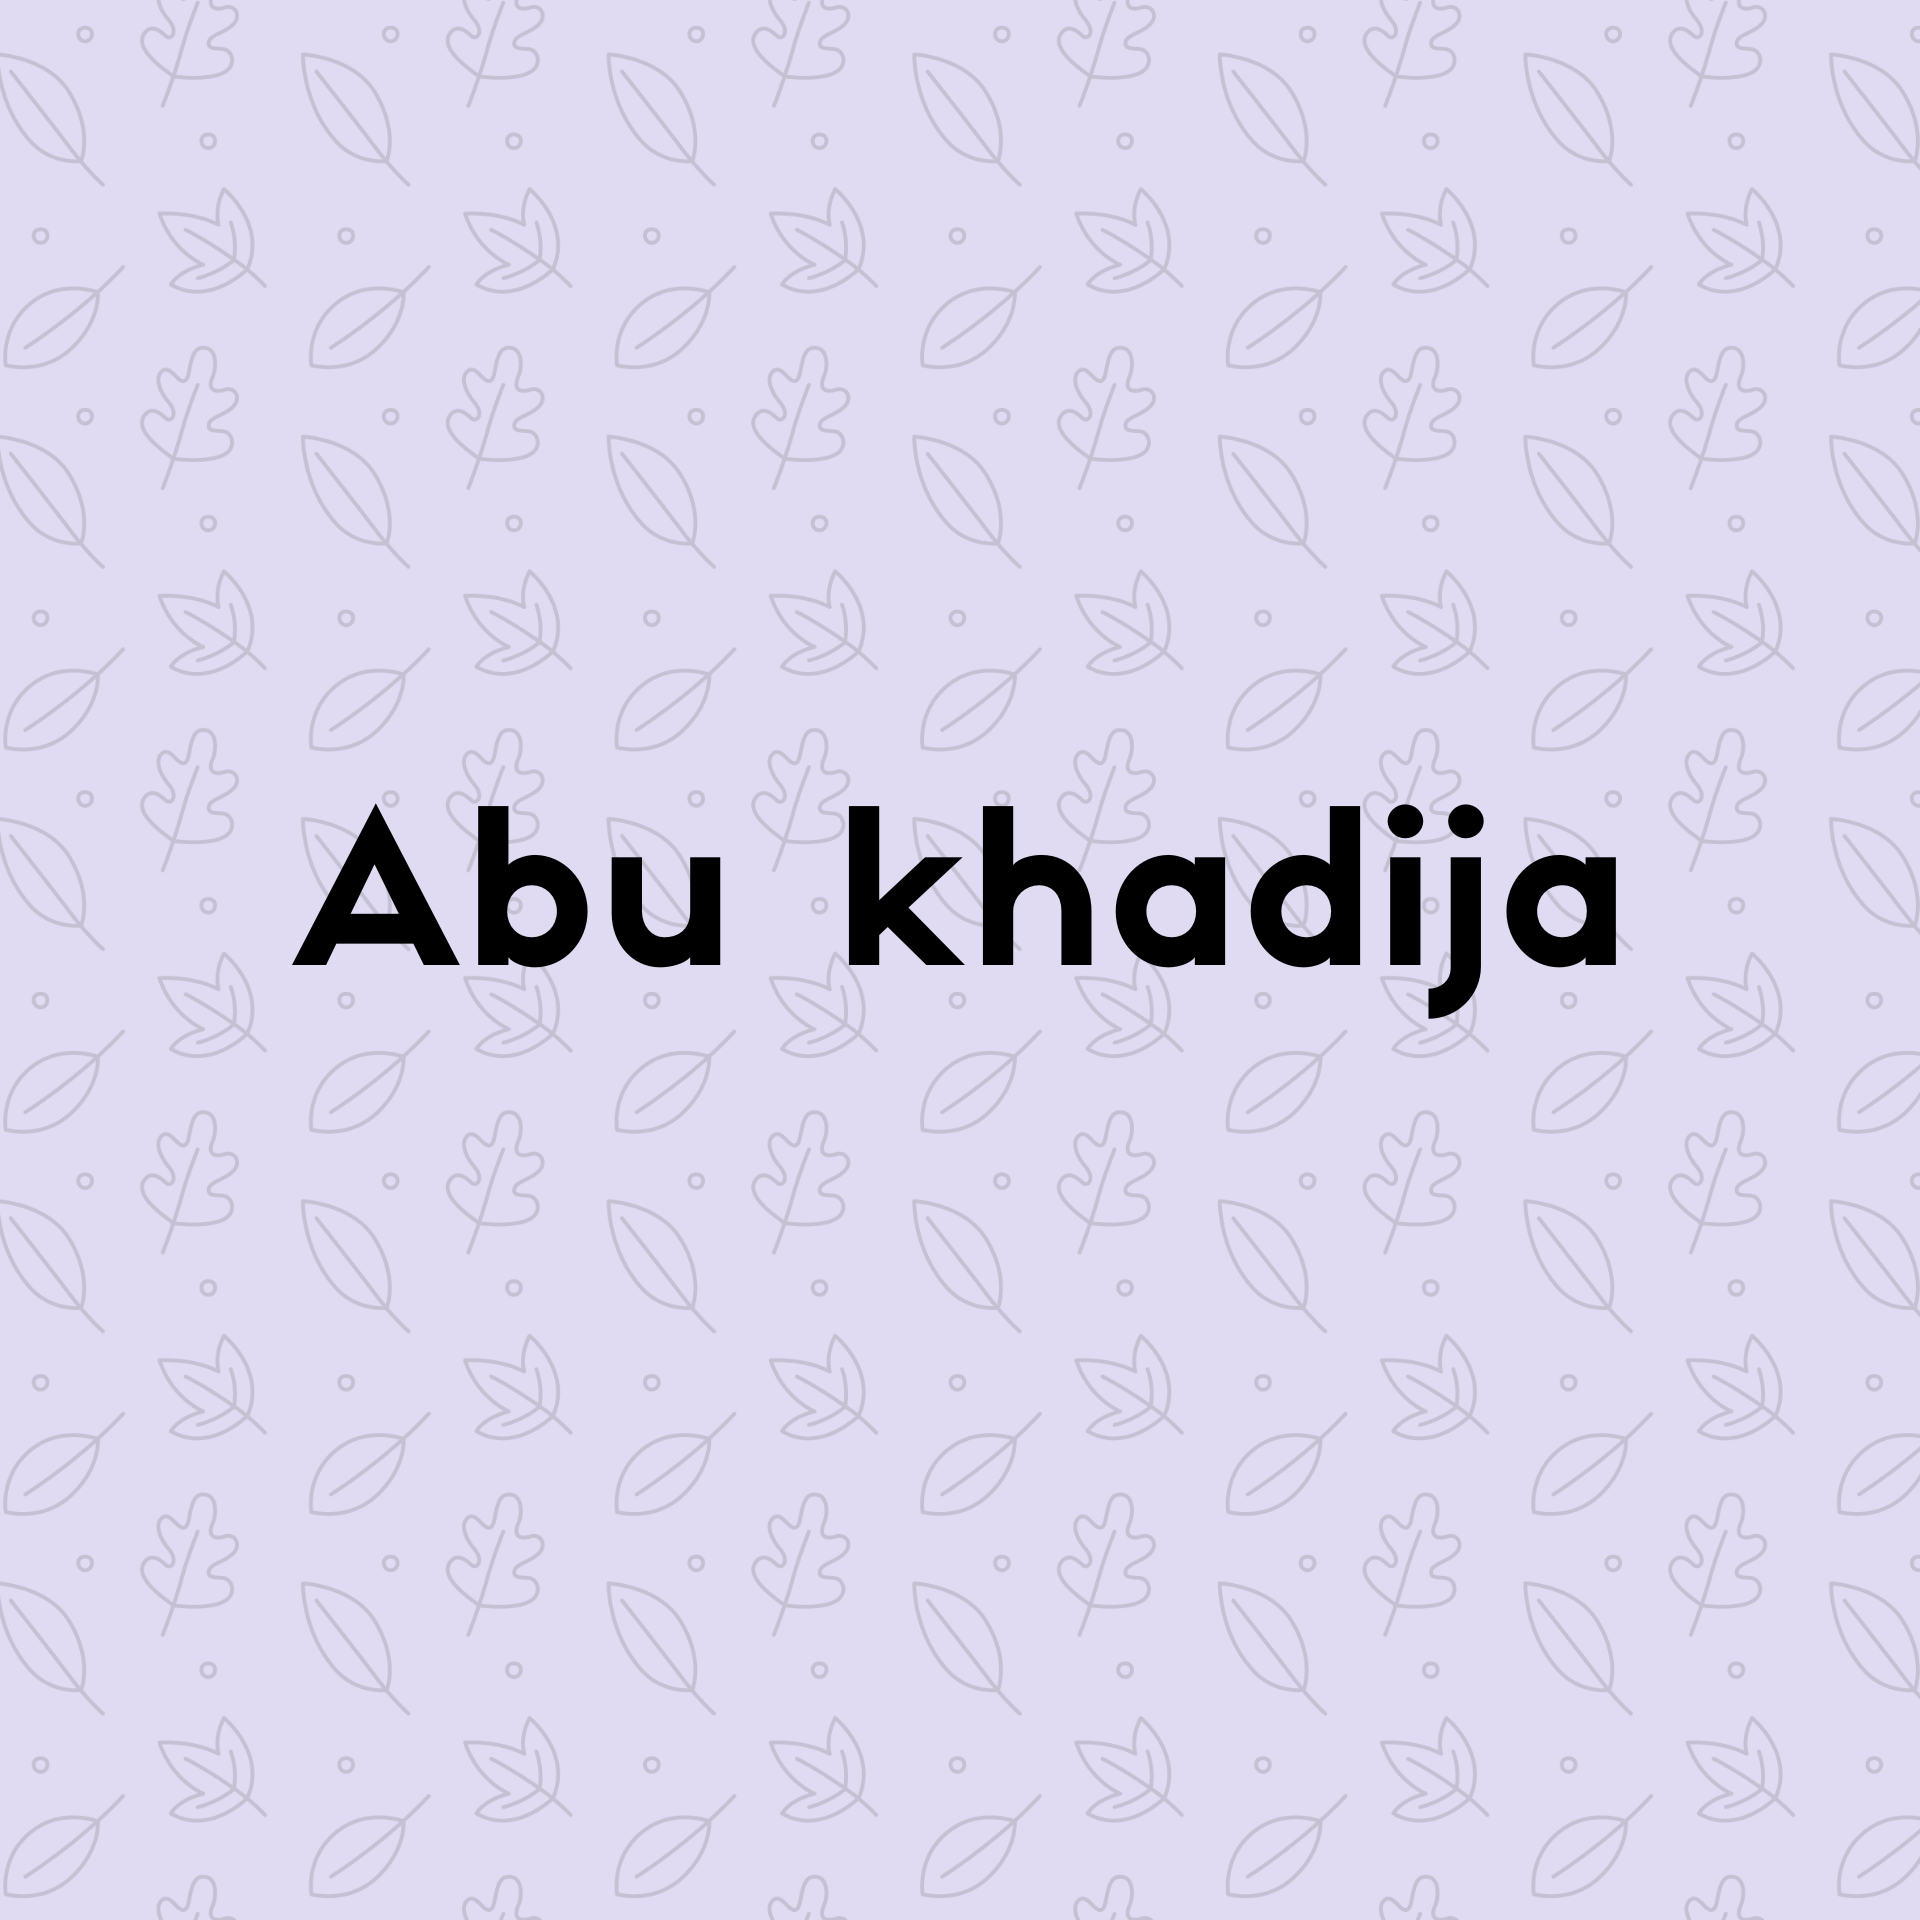  Abu Khadija